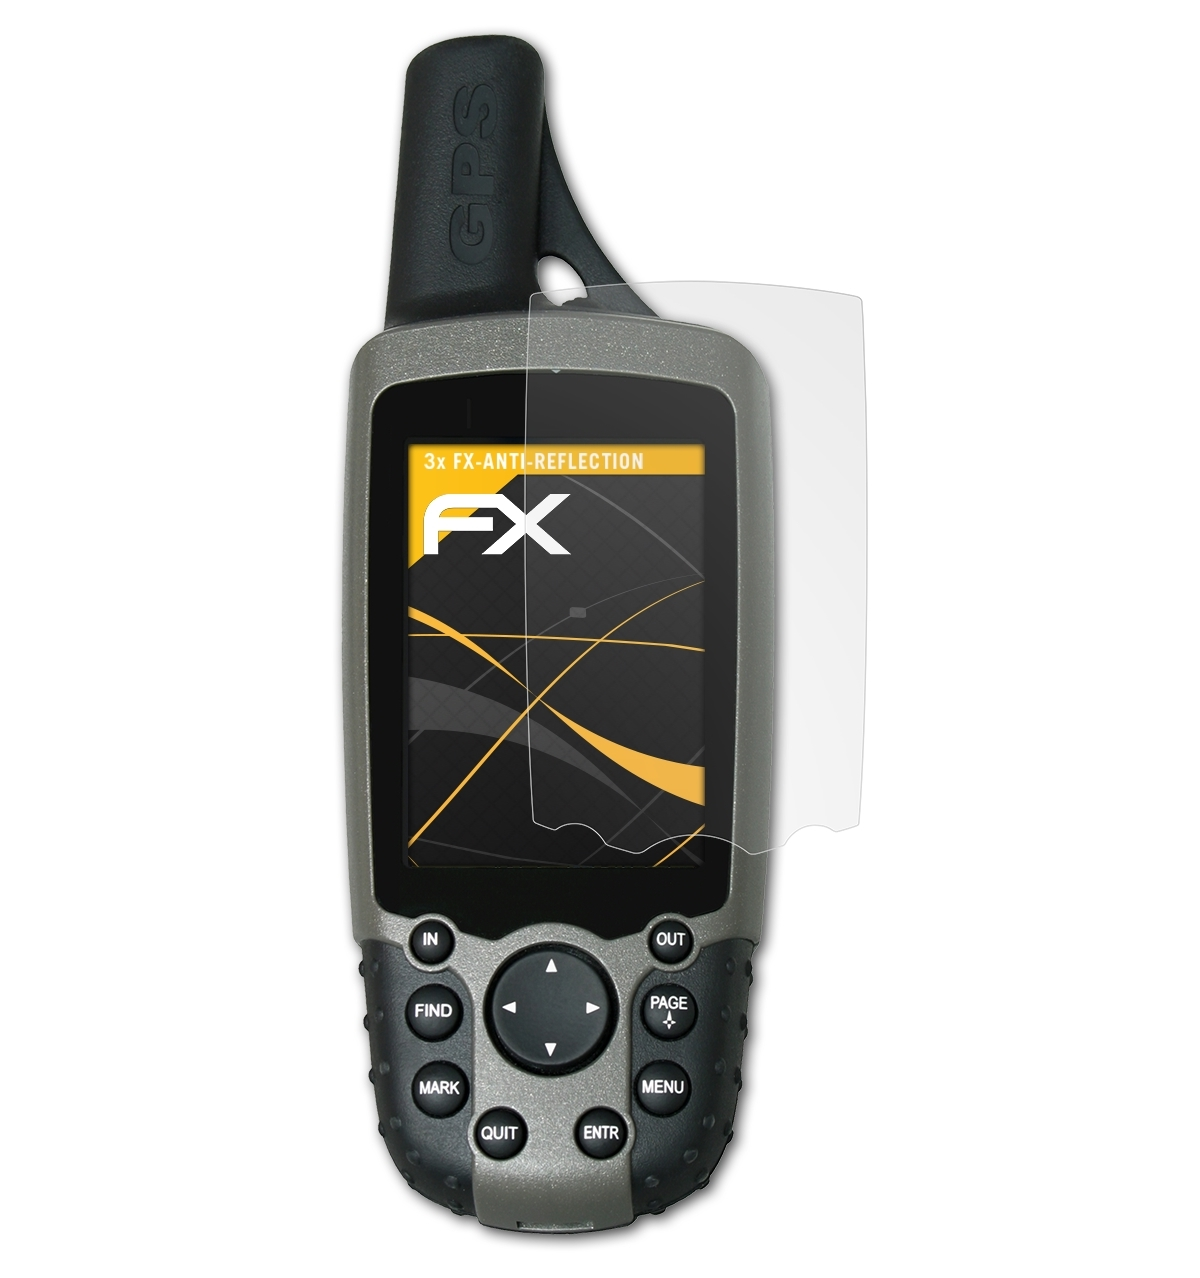 ATFOLIX 3x FX-Antireflex Displayschutz(für Garmin 60C) GPSMap